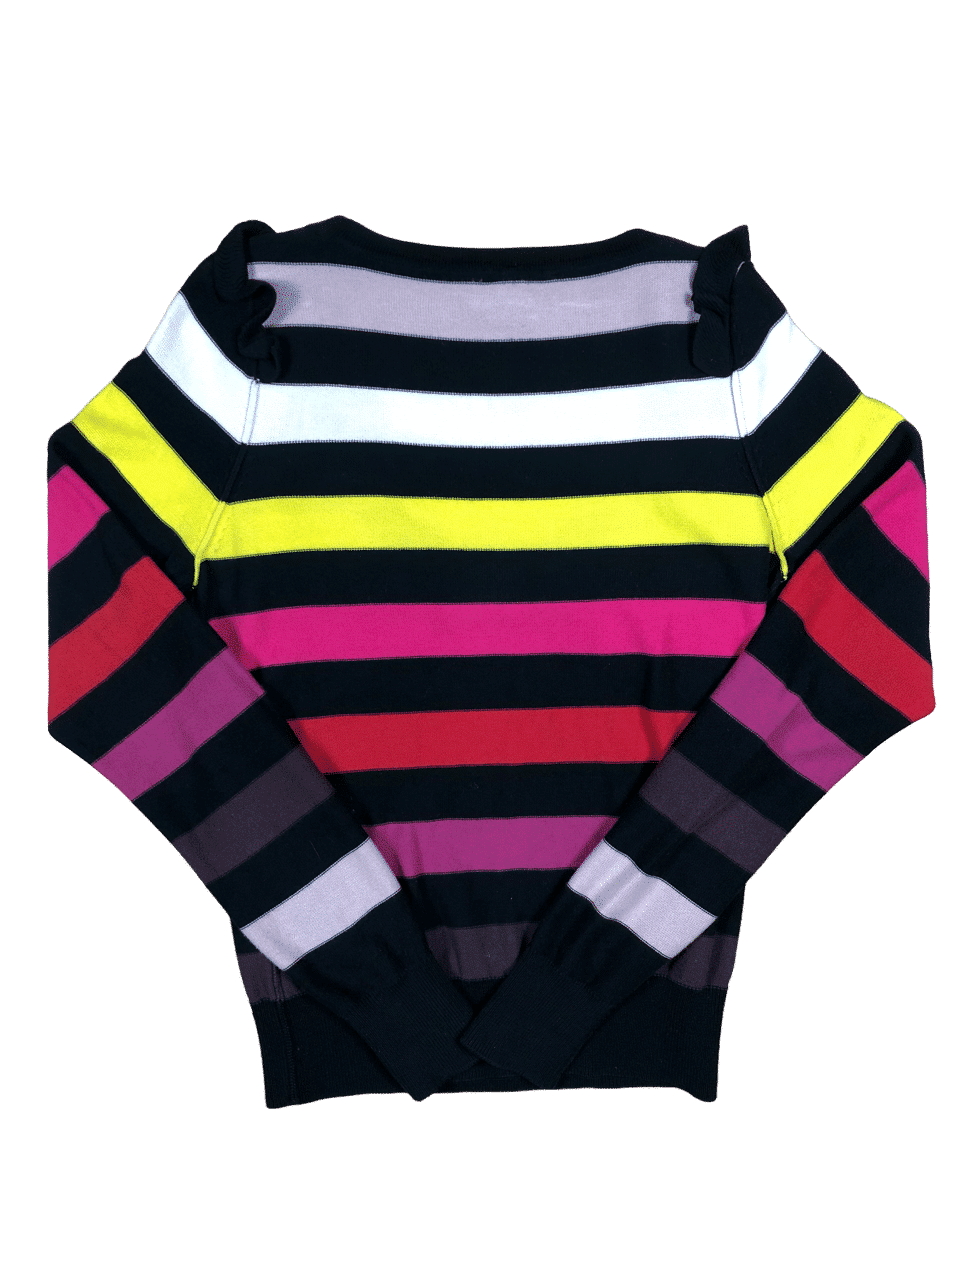 Sweterek Sonia Rykiel